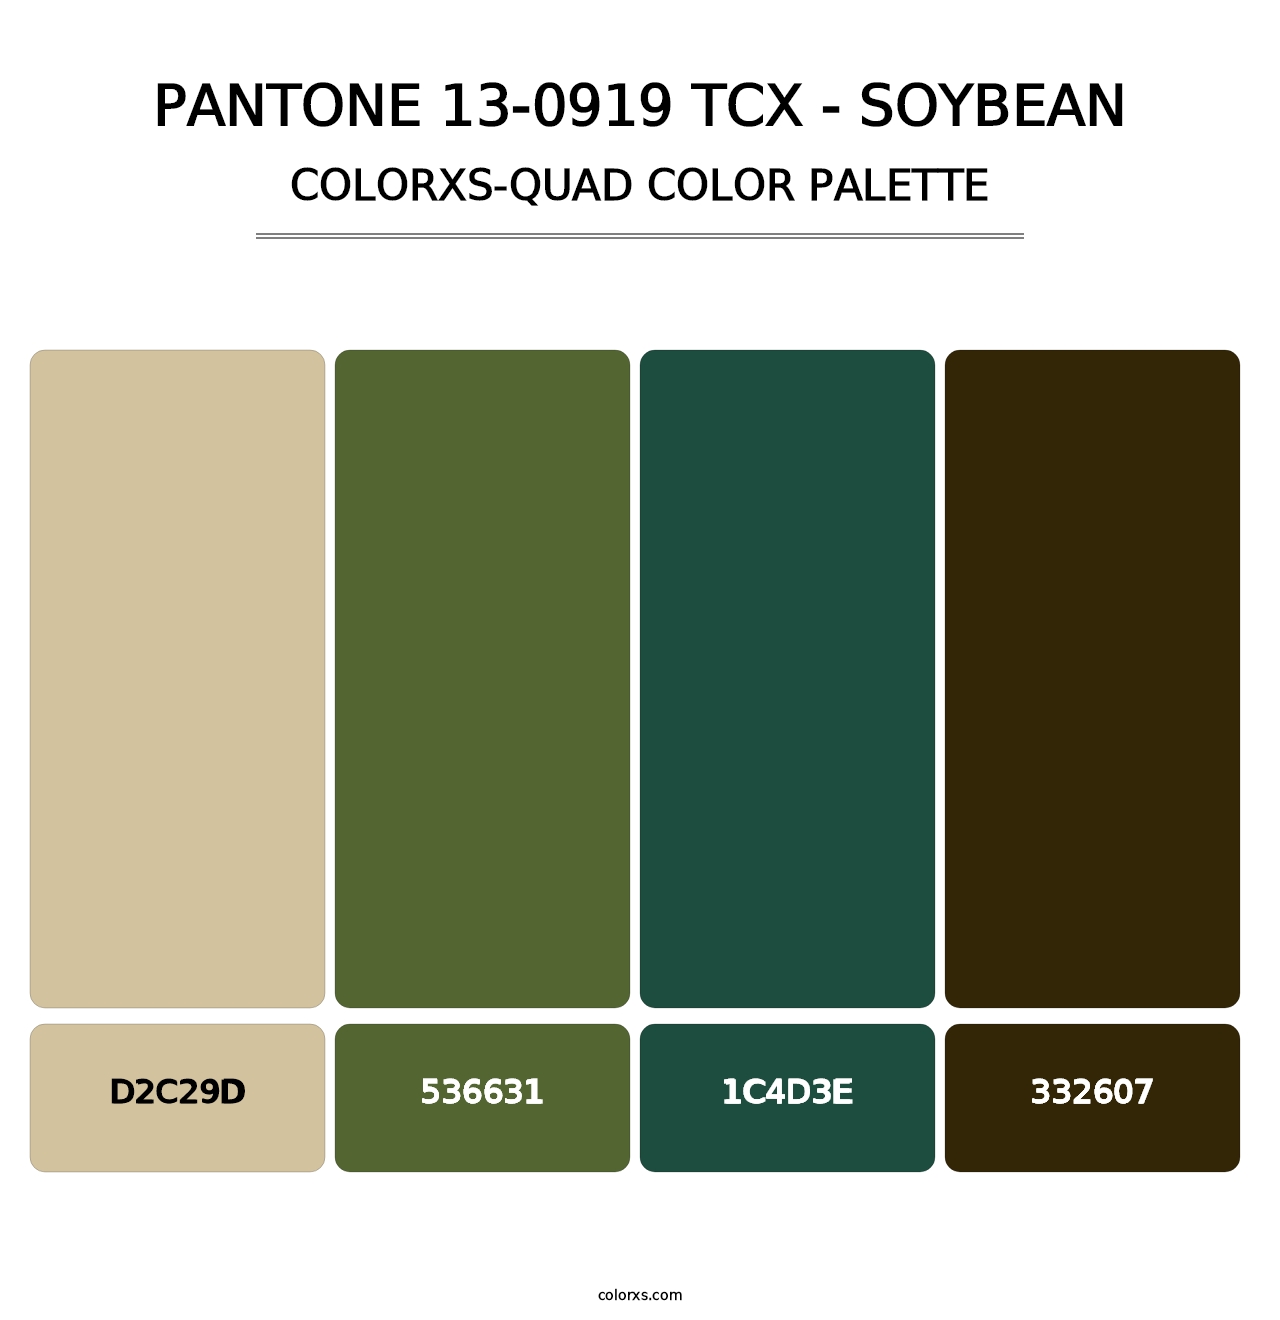 PANTONE 13-0919 TCX - Soybean - Colorxs Quad Palette